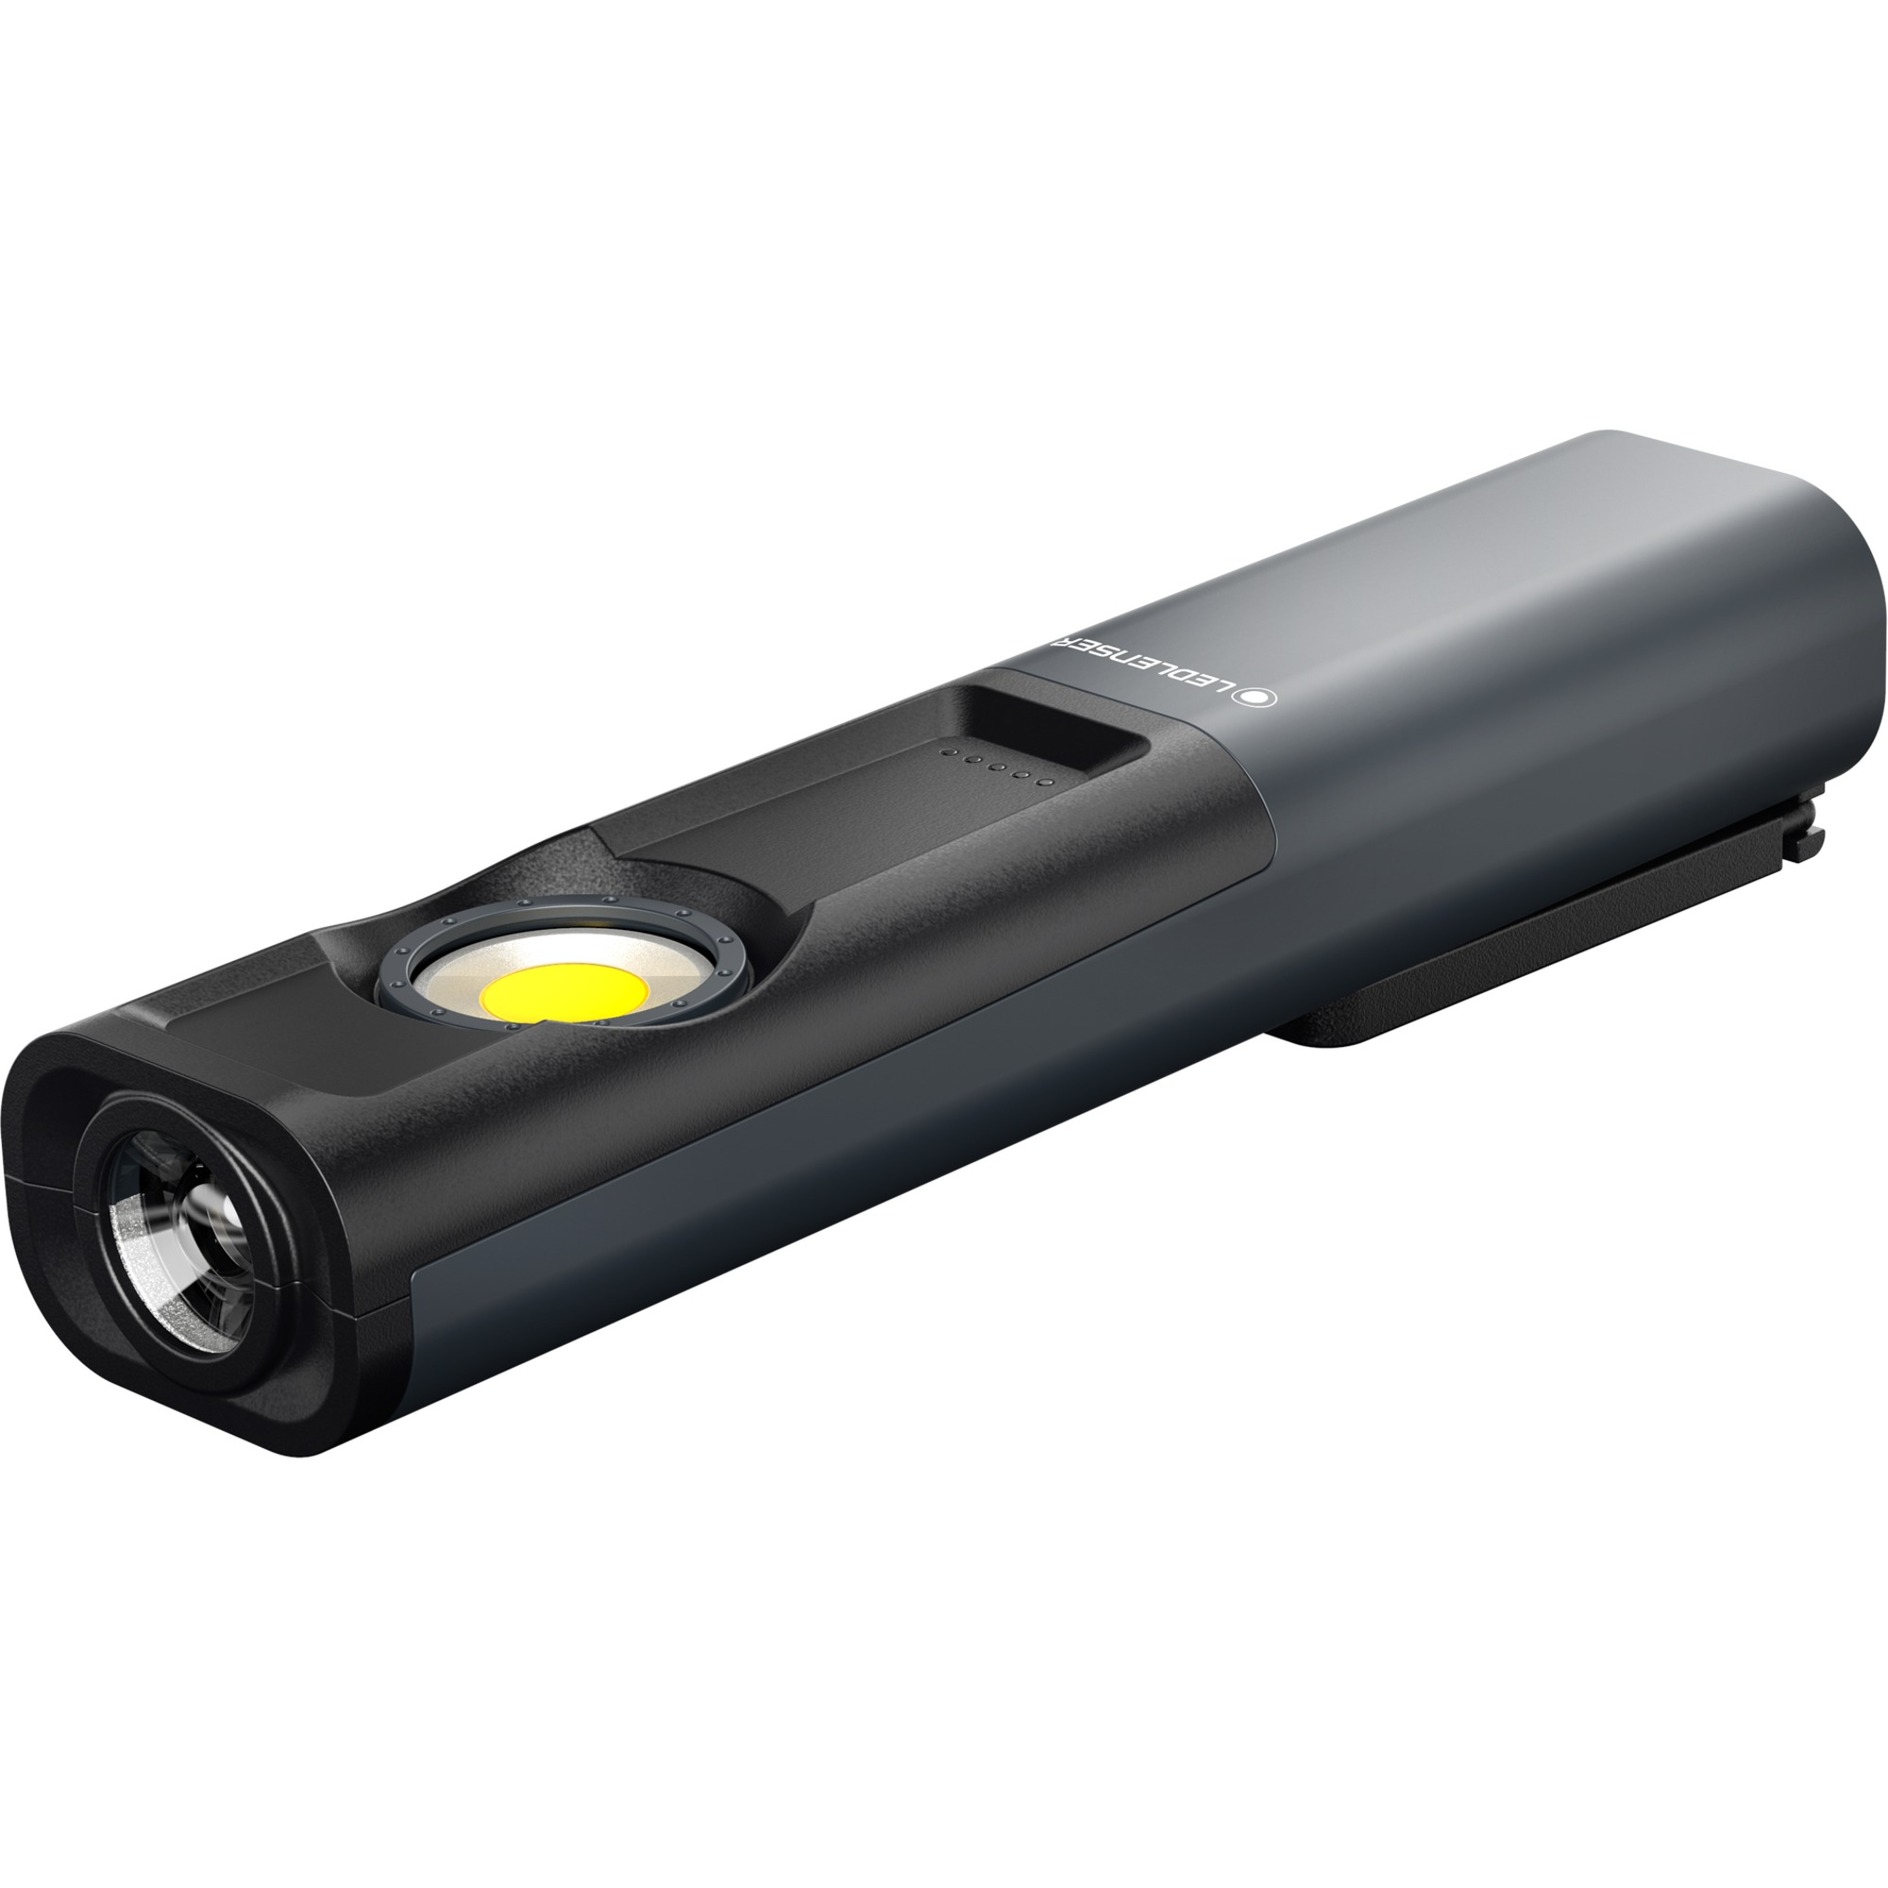 Image of Alternate - iW7R, Taschenlampe online einkaufen bei Alternate